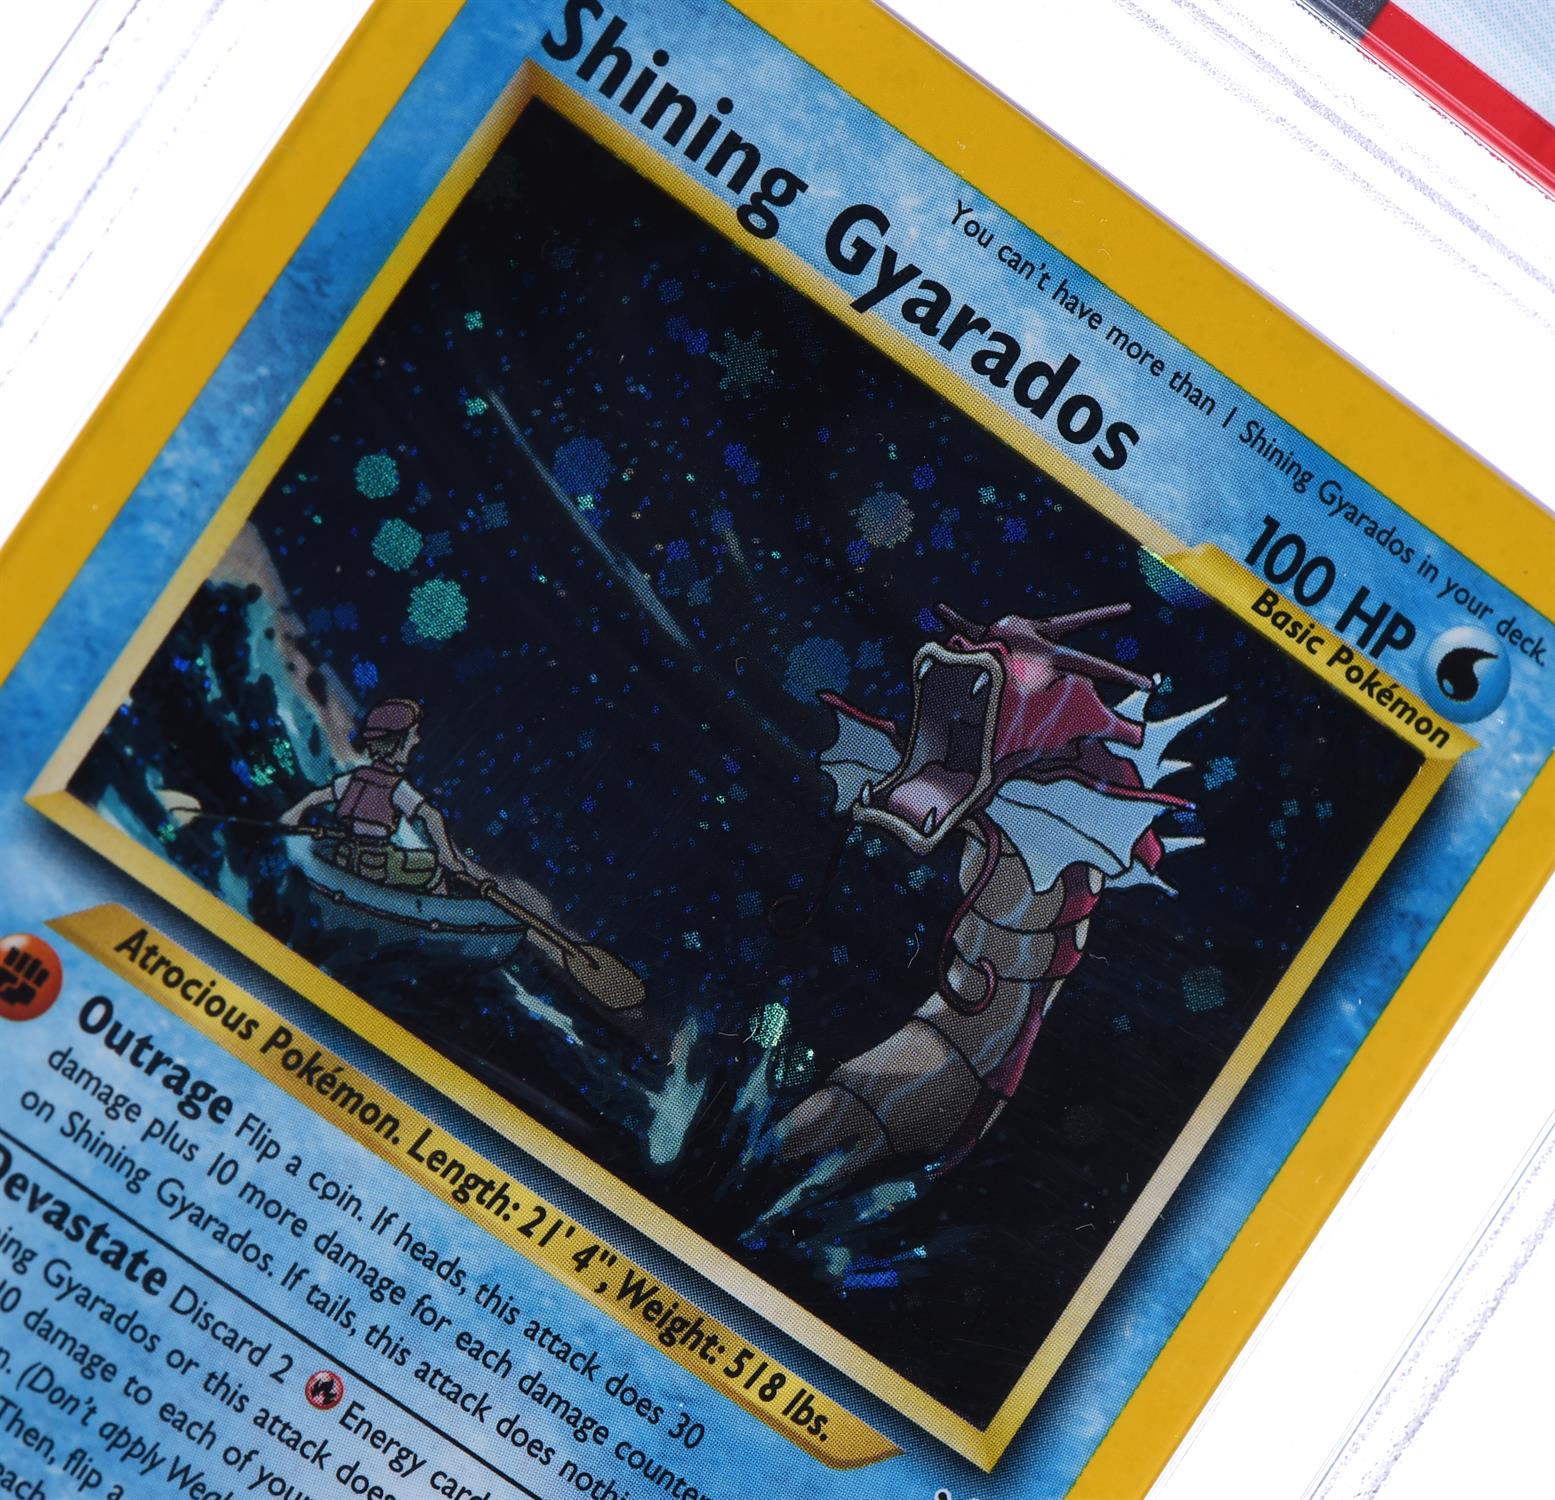 Pokemon TCG. Shining Gyarados 65/64 Holographic Secret rare from Neo Revelation graded PSA 9 Mint. - Image 4 of 4